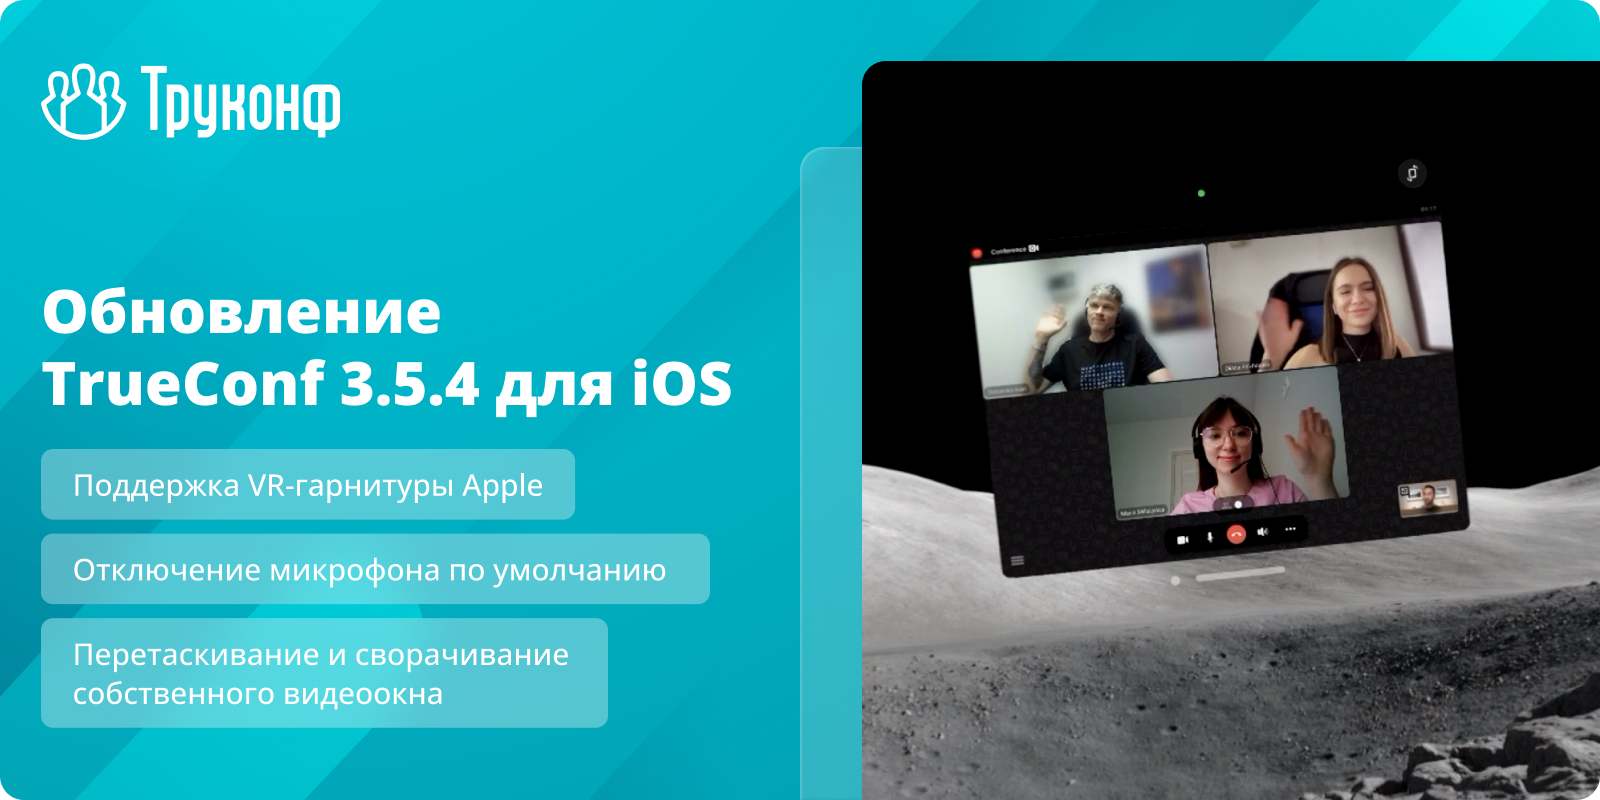 Обновление iOS 3.5.4: поддержка VR-гарнитуры Apple и отключение микрофона по умолчанию 1